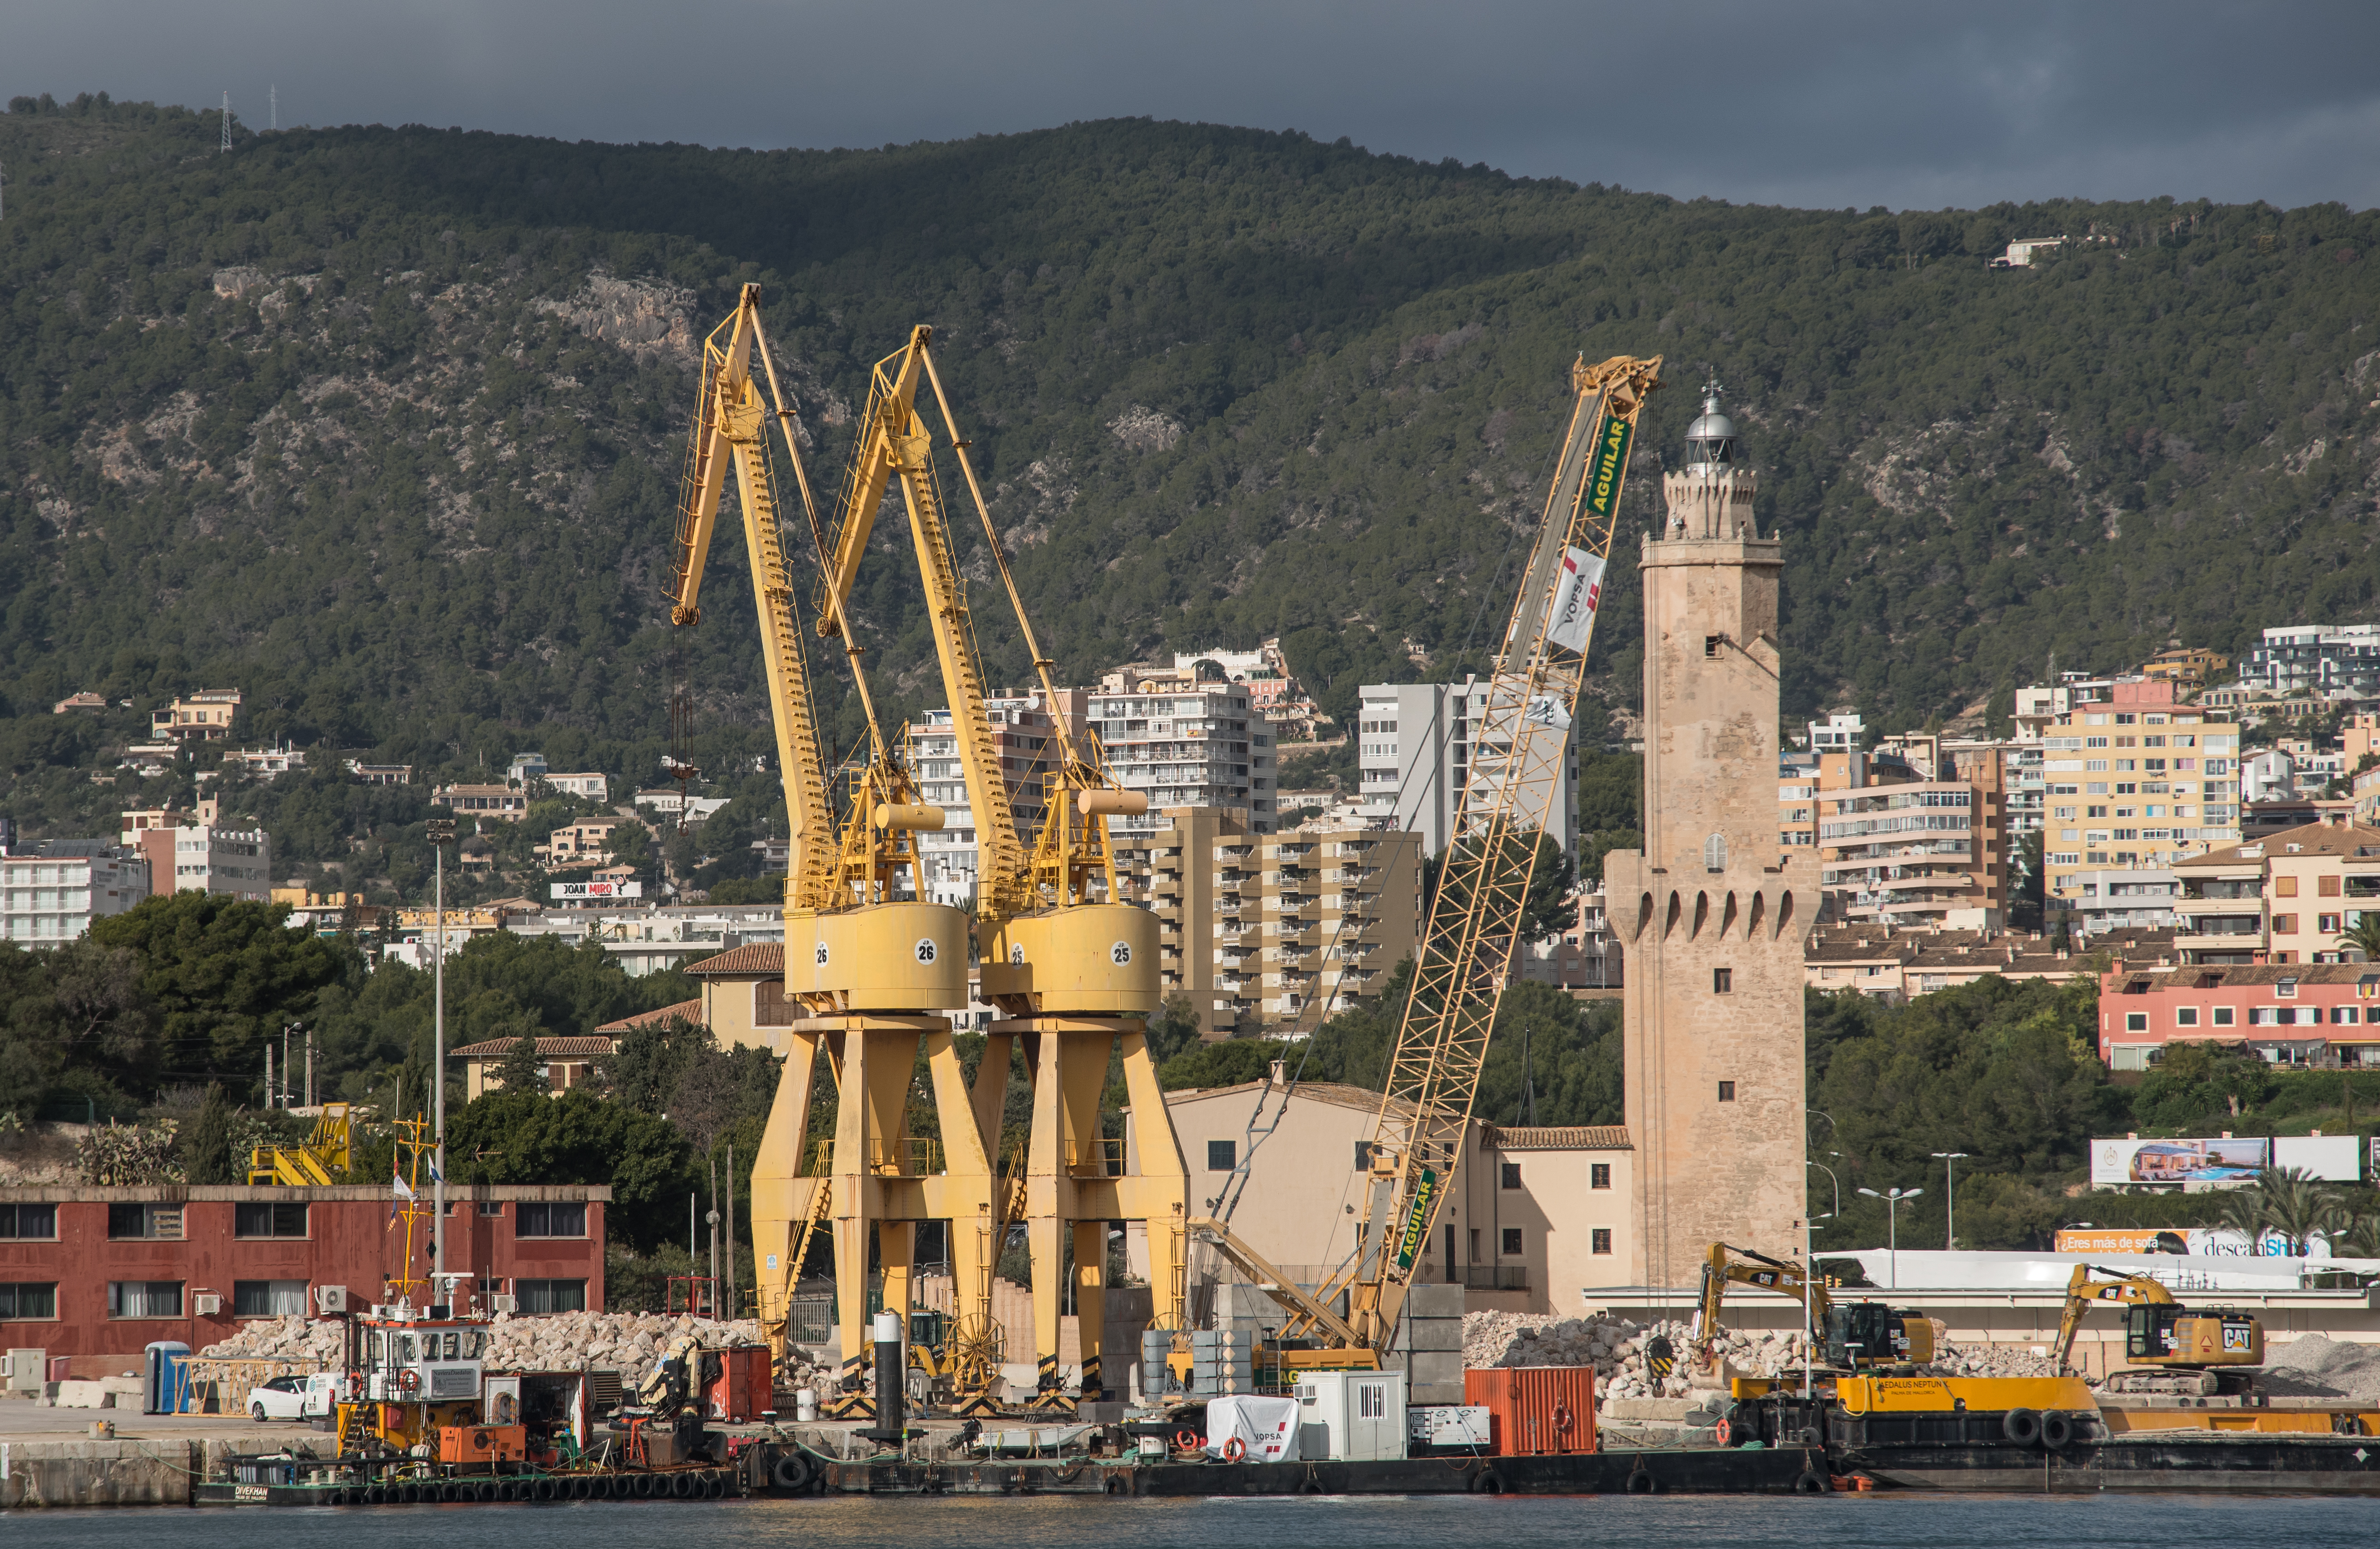 L'APB adjudica la redacció del projecte constructiu dels nous atracaments i esplanades per al tràfic de ferris al dic de l'Oest del port de Palma